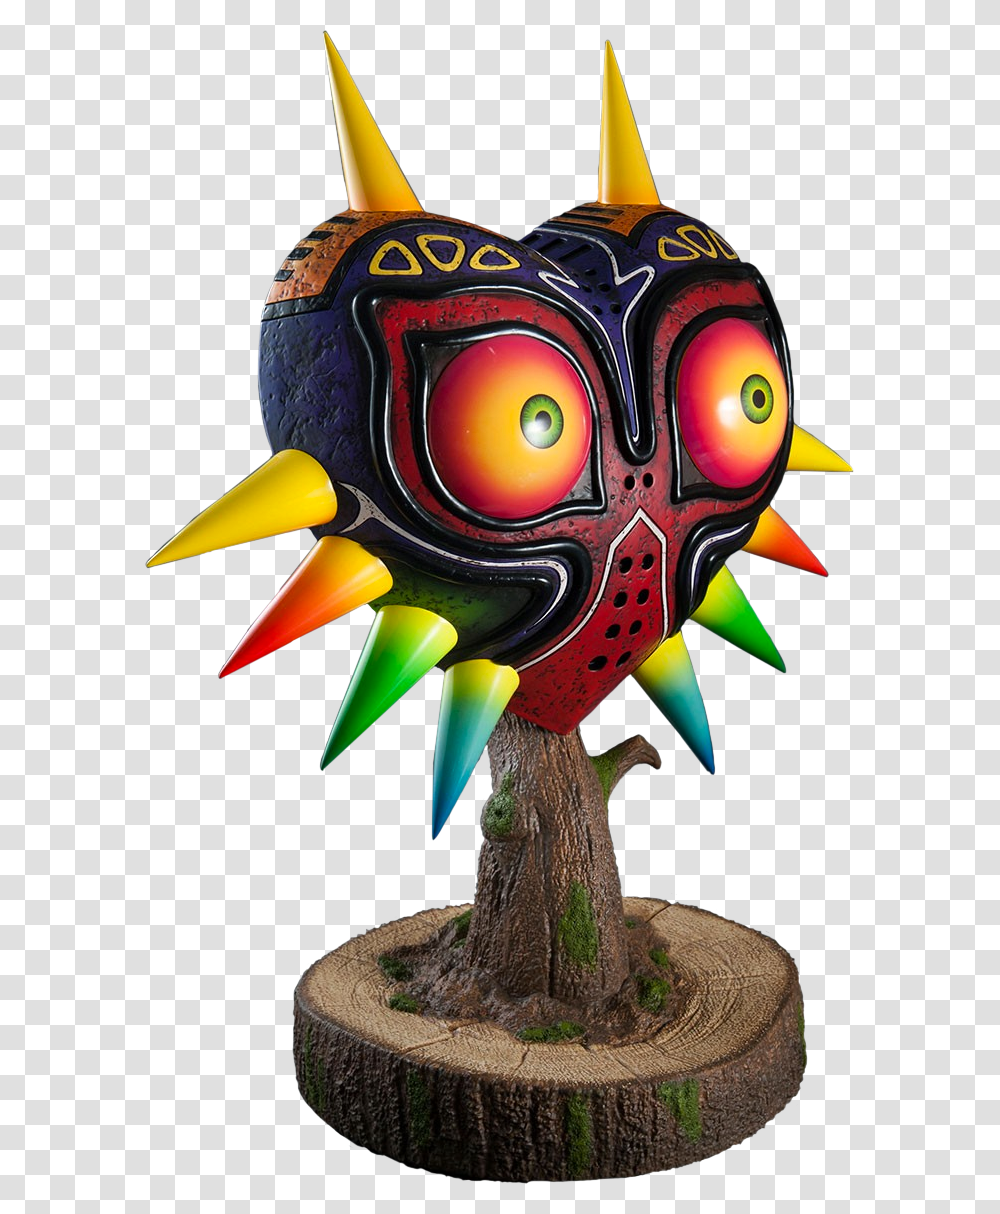 Zelda Majoras Mask Replica, Toy, Logo Transparent Png